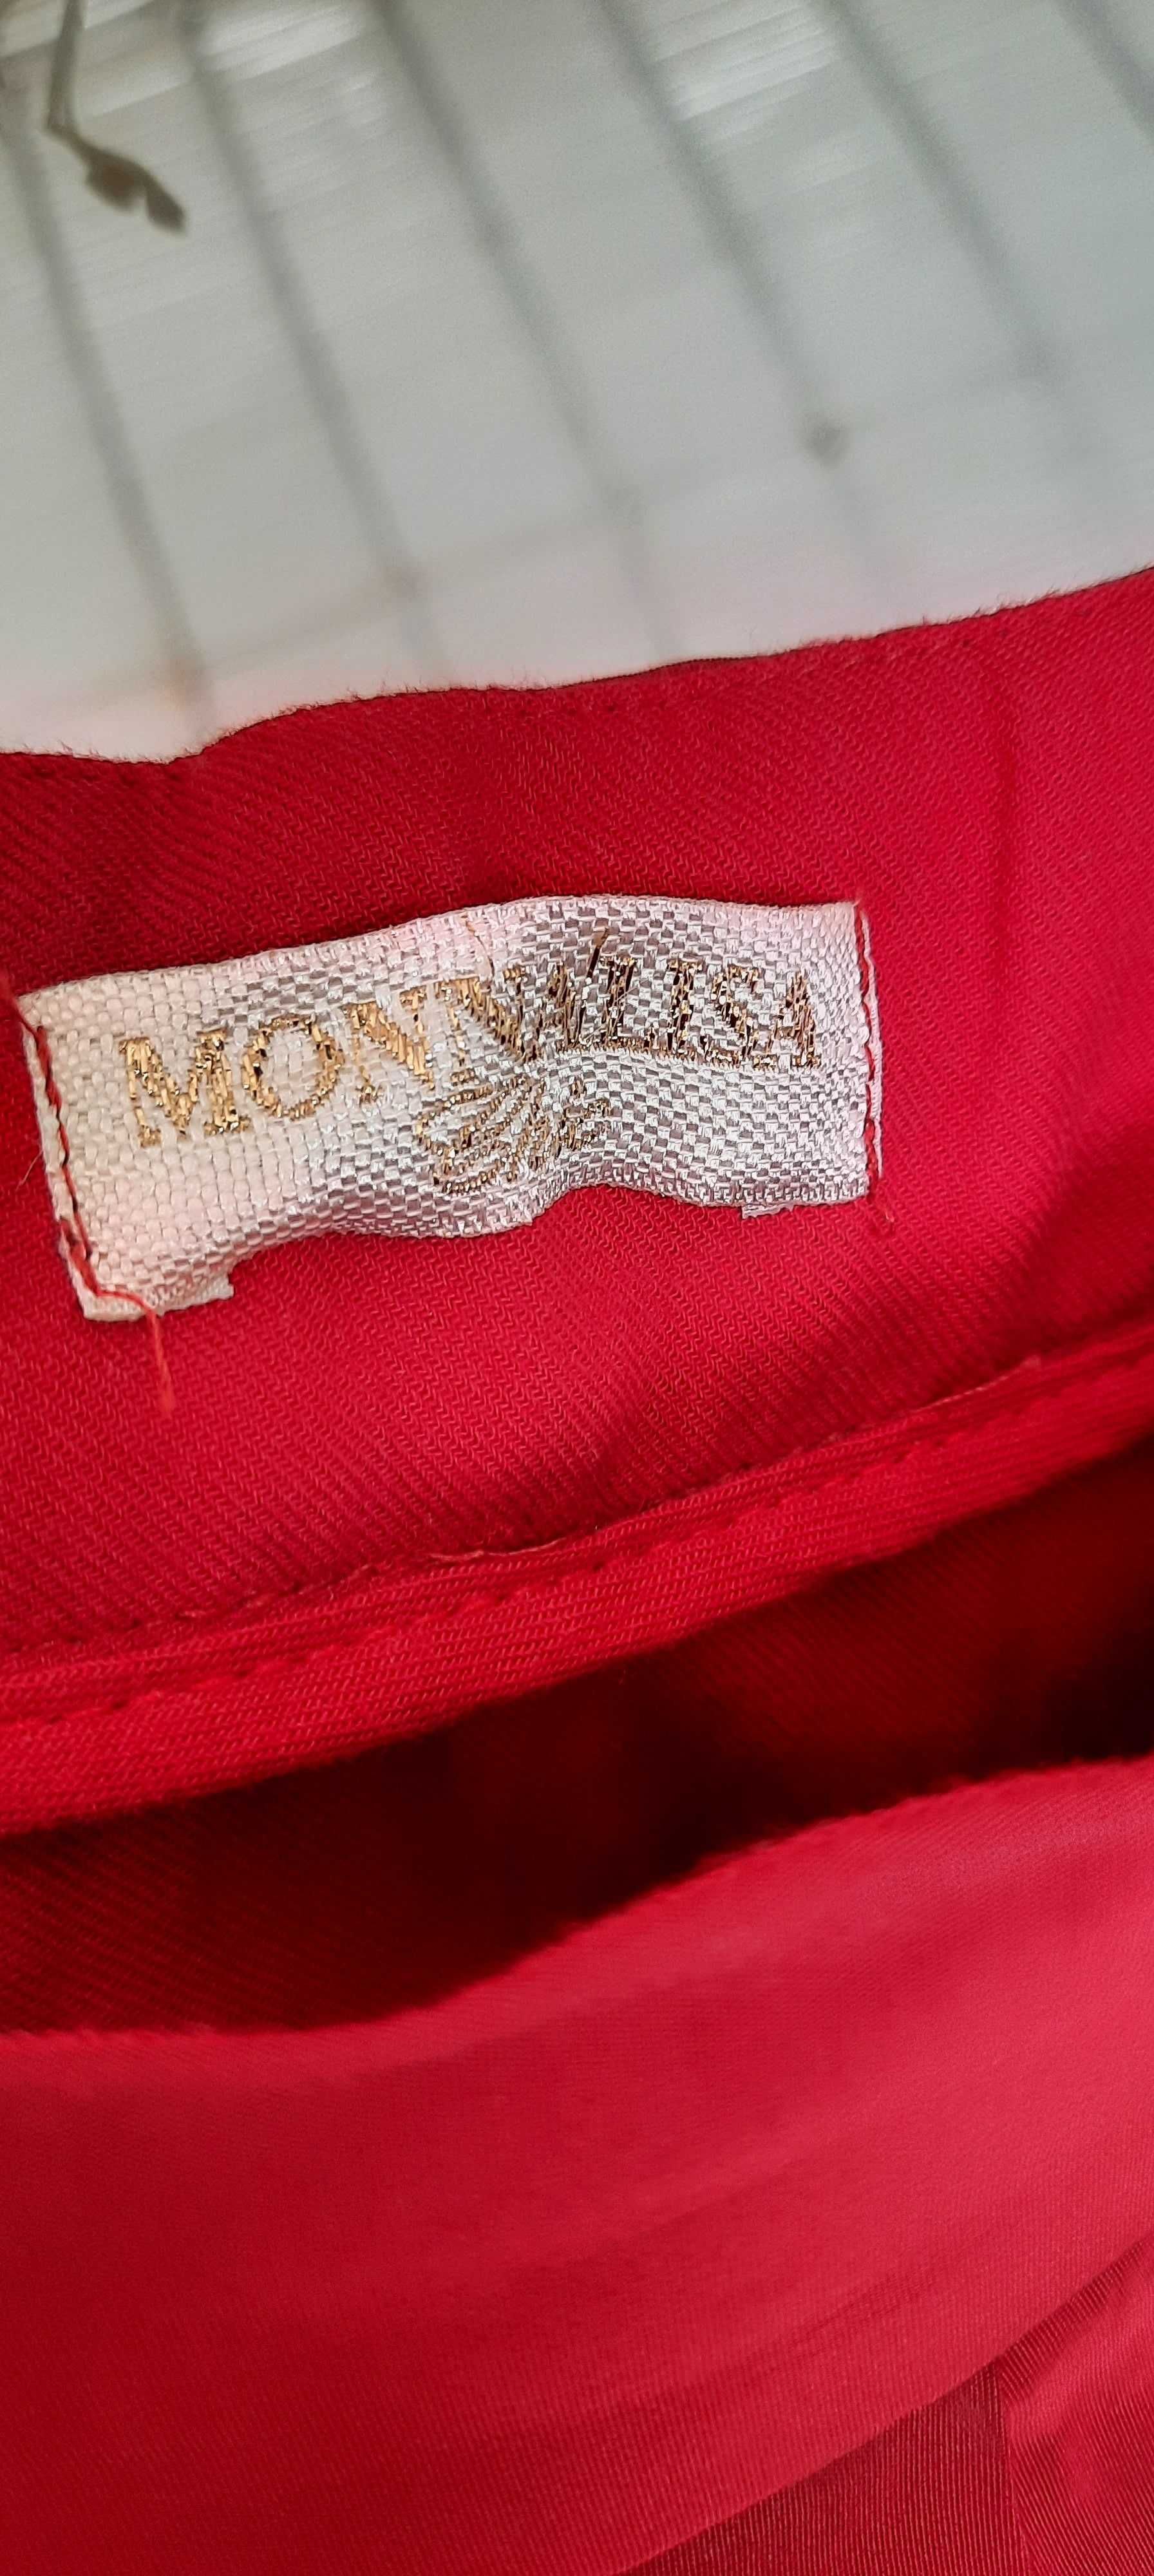 Saia da marca "Monalisa"